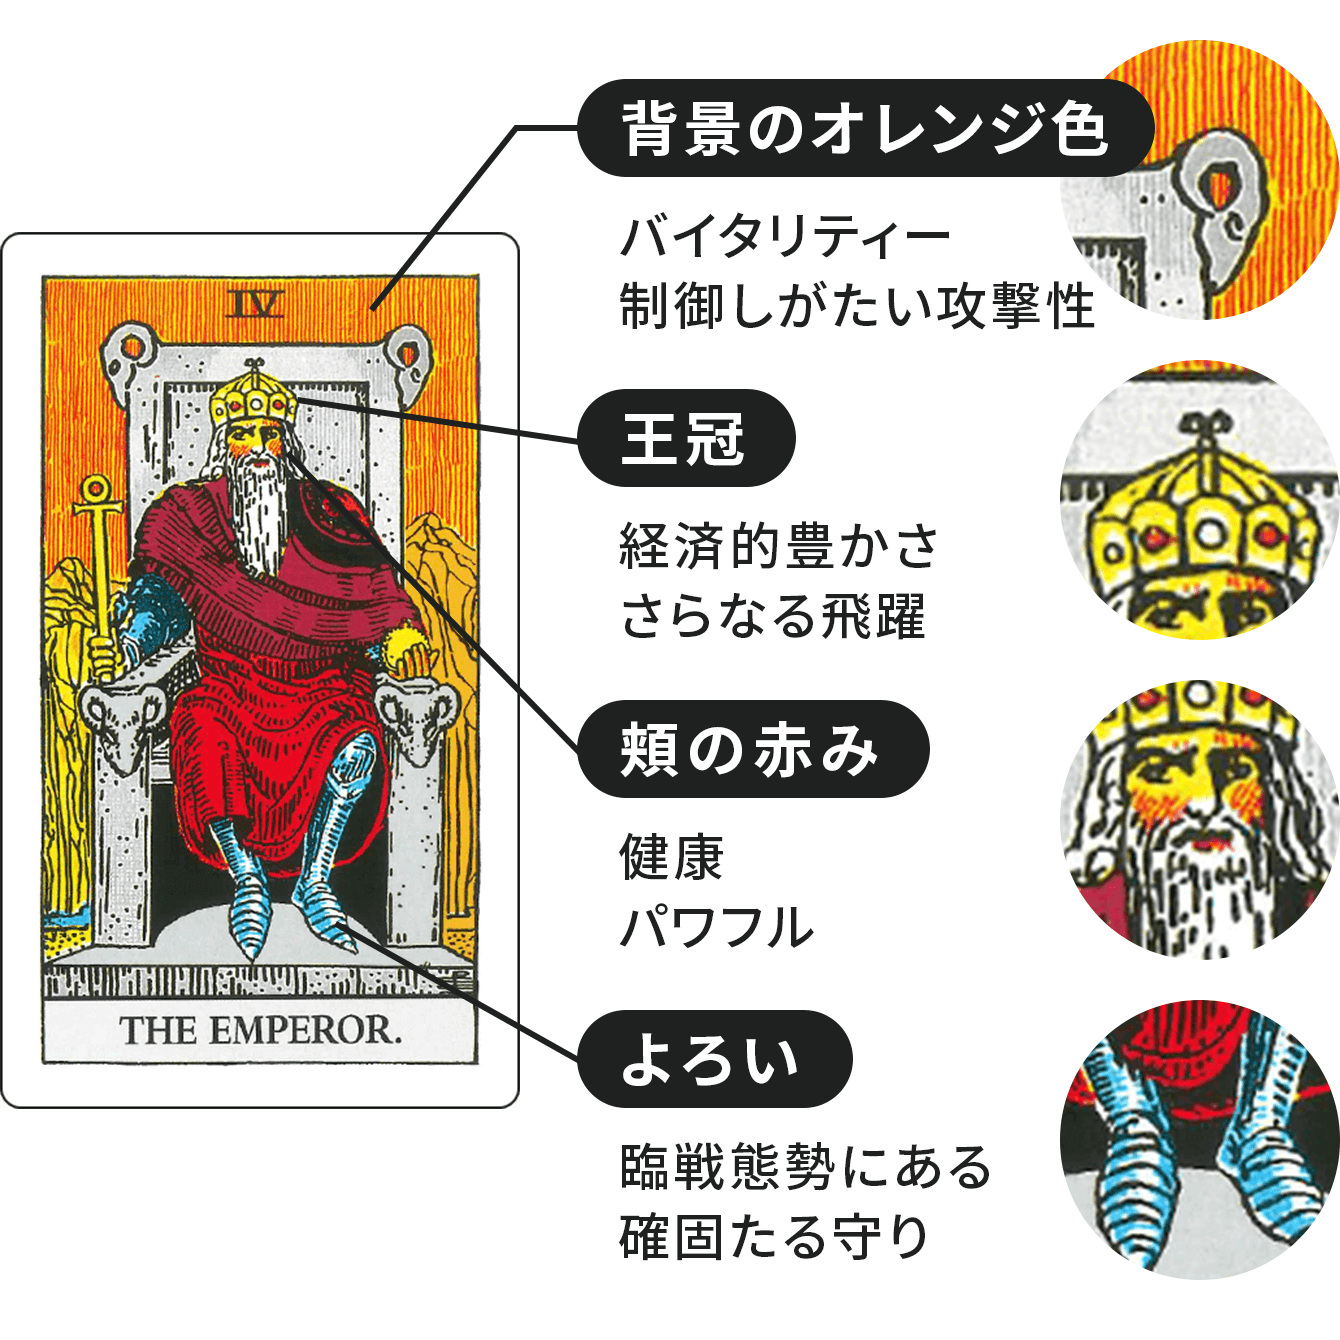 皇帝に描かれたシンボルの解釈